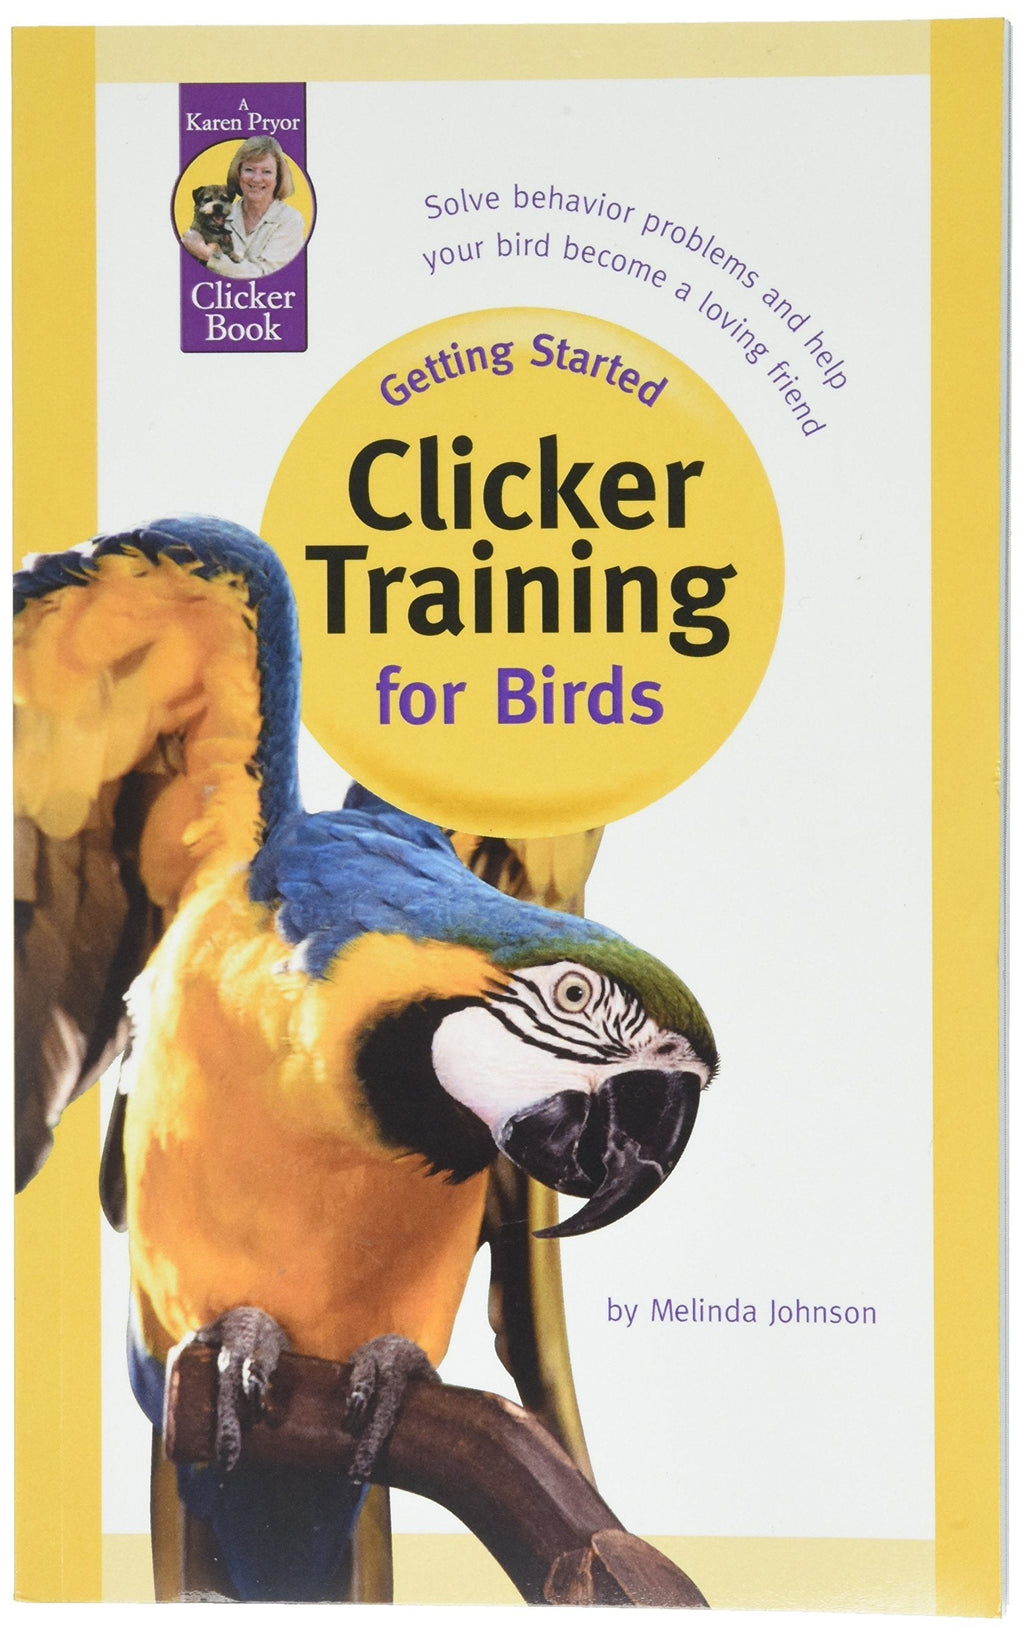 [Australia] - Karen Pryor, Getting Started: Clicker Training for Birds Kit 